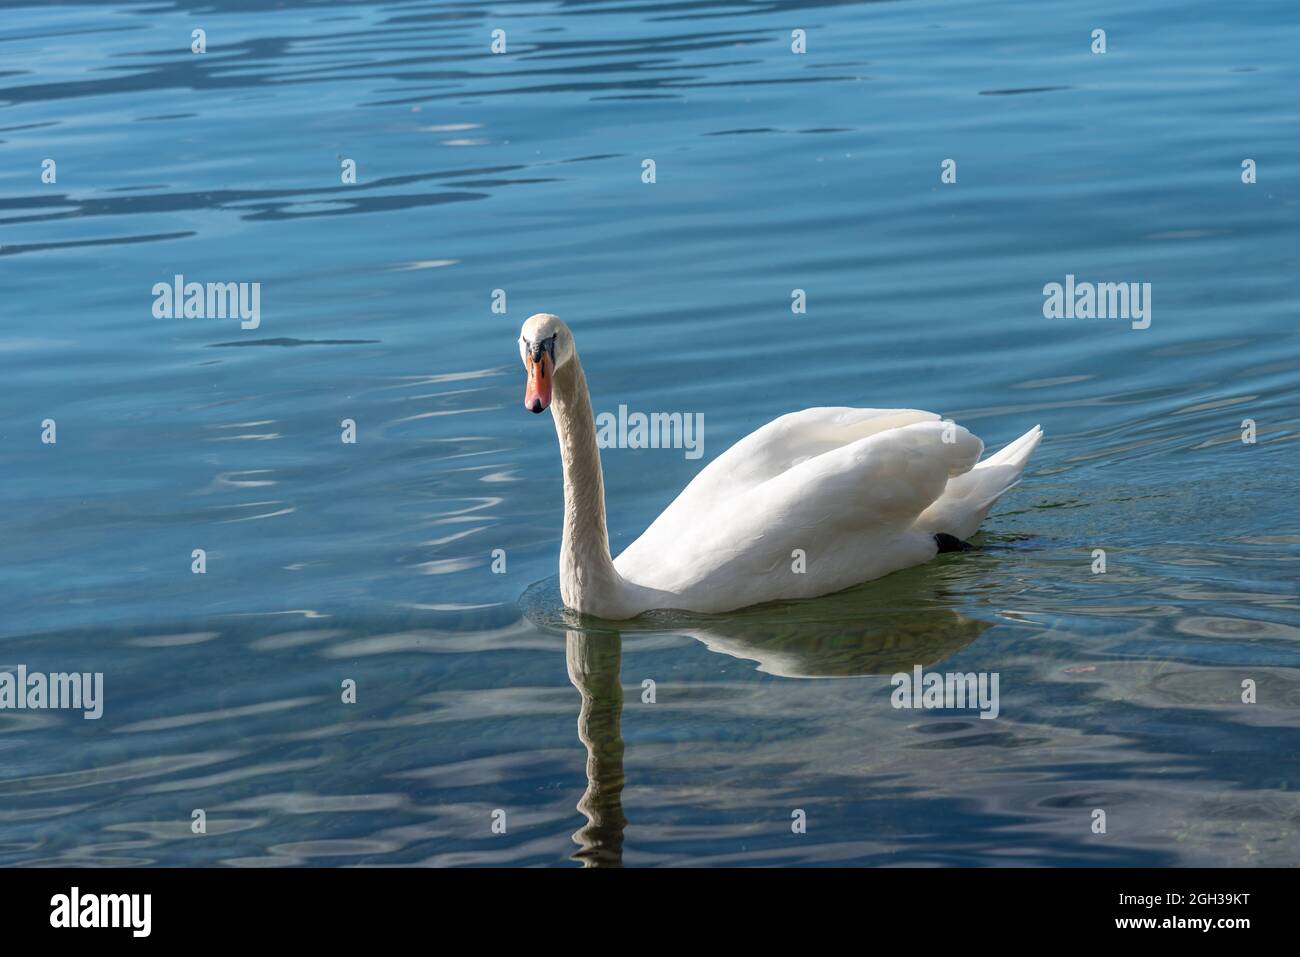 Cygne blanc flottant dans un lac limpide avec son image reflétée dans l'eau par une journée ensoleillée. Banque D'Images